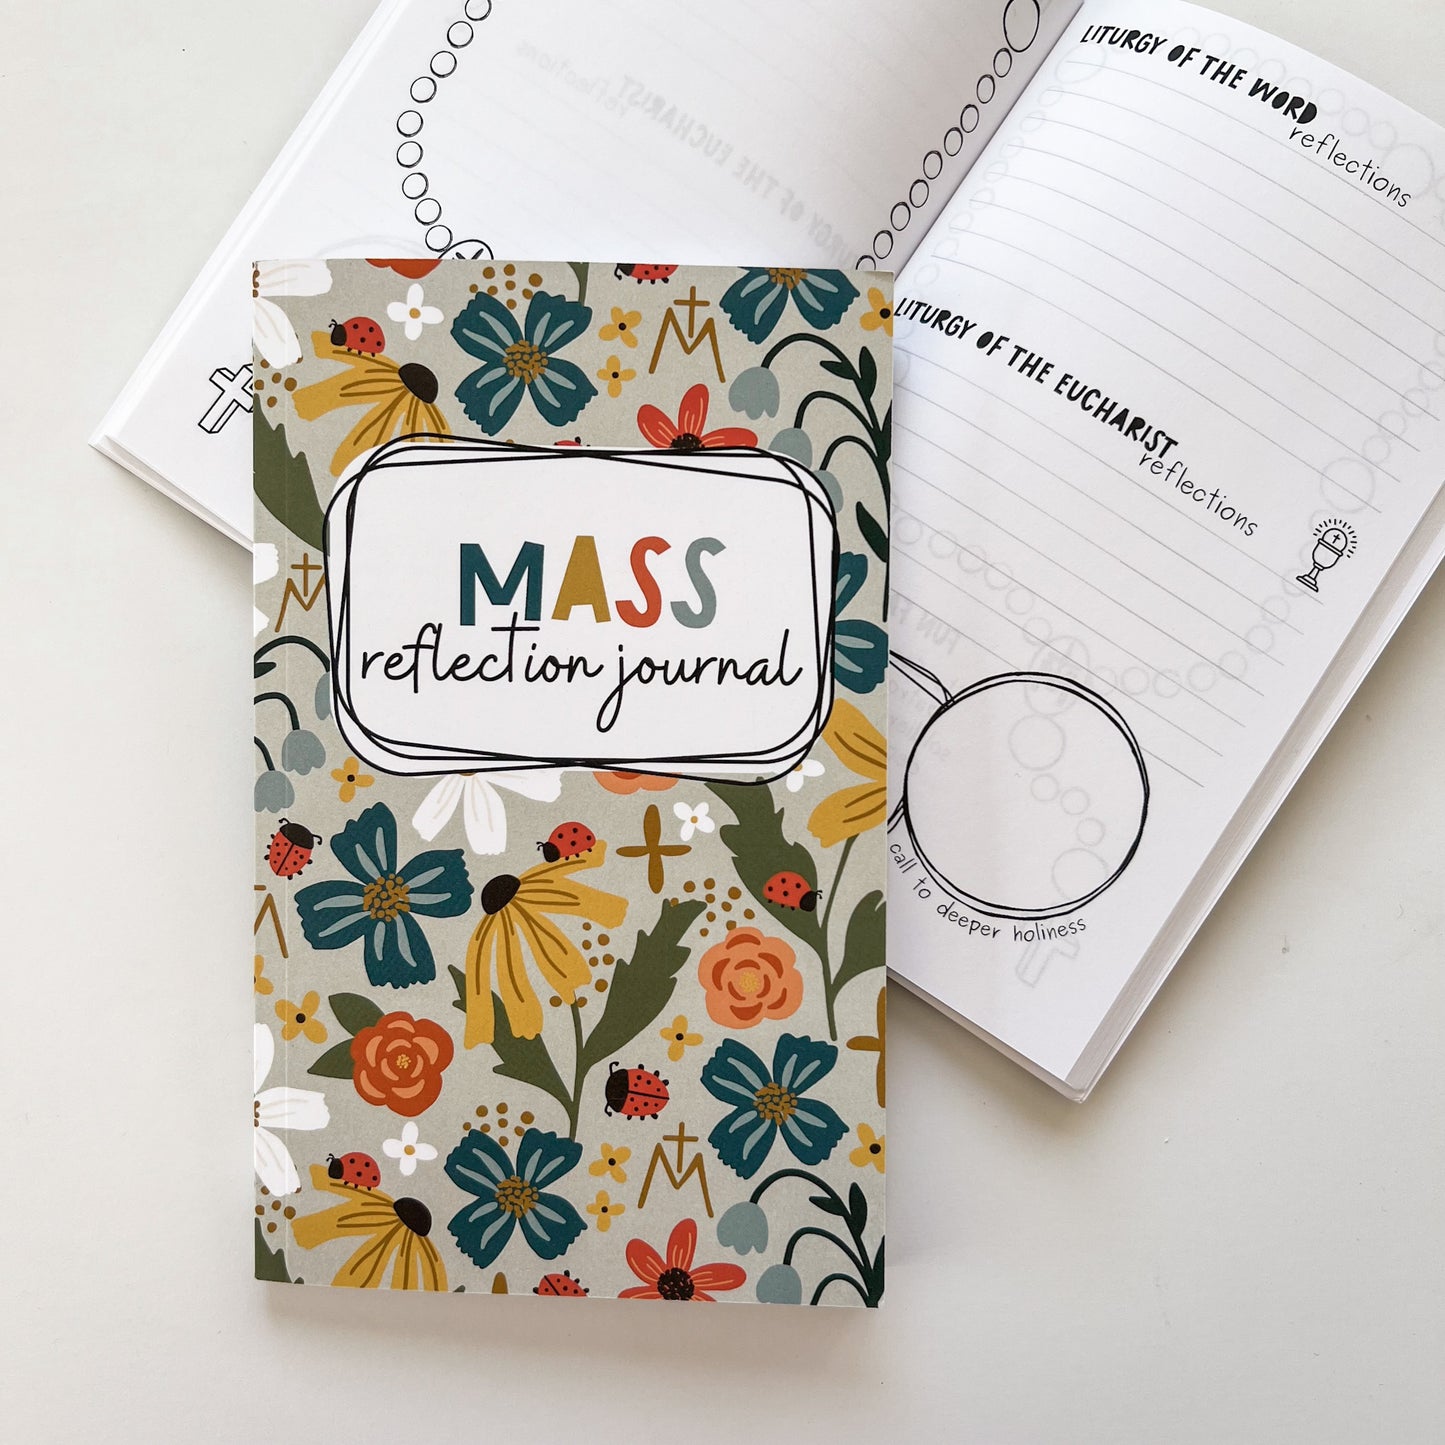 My Mass Reflection Journal